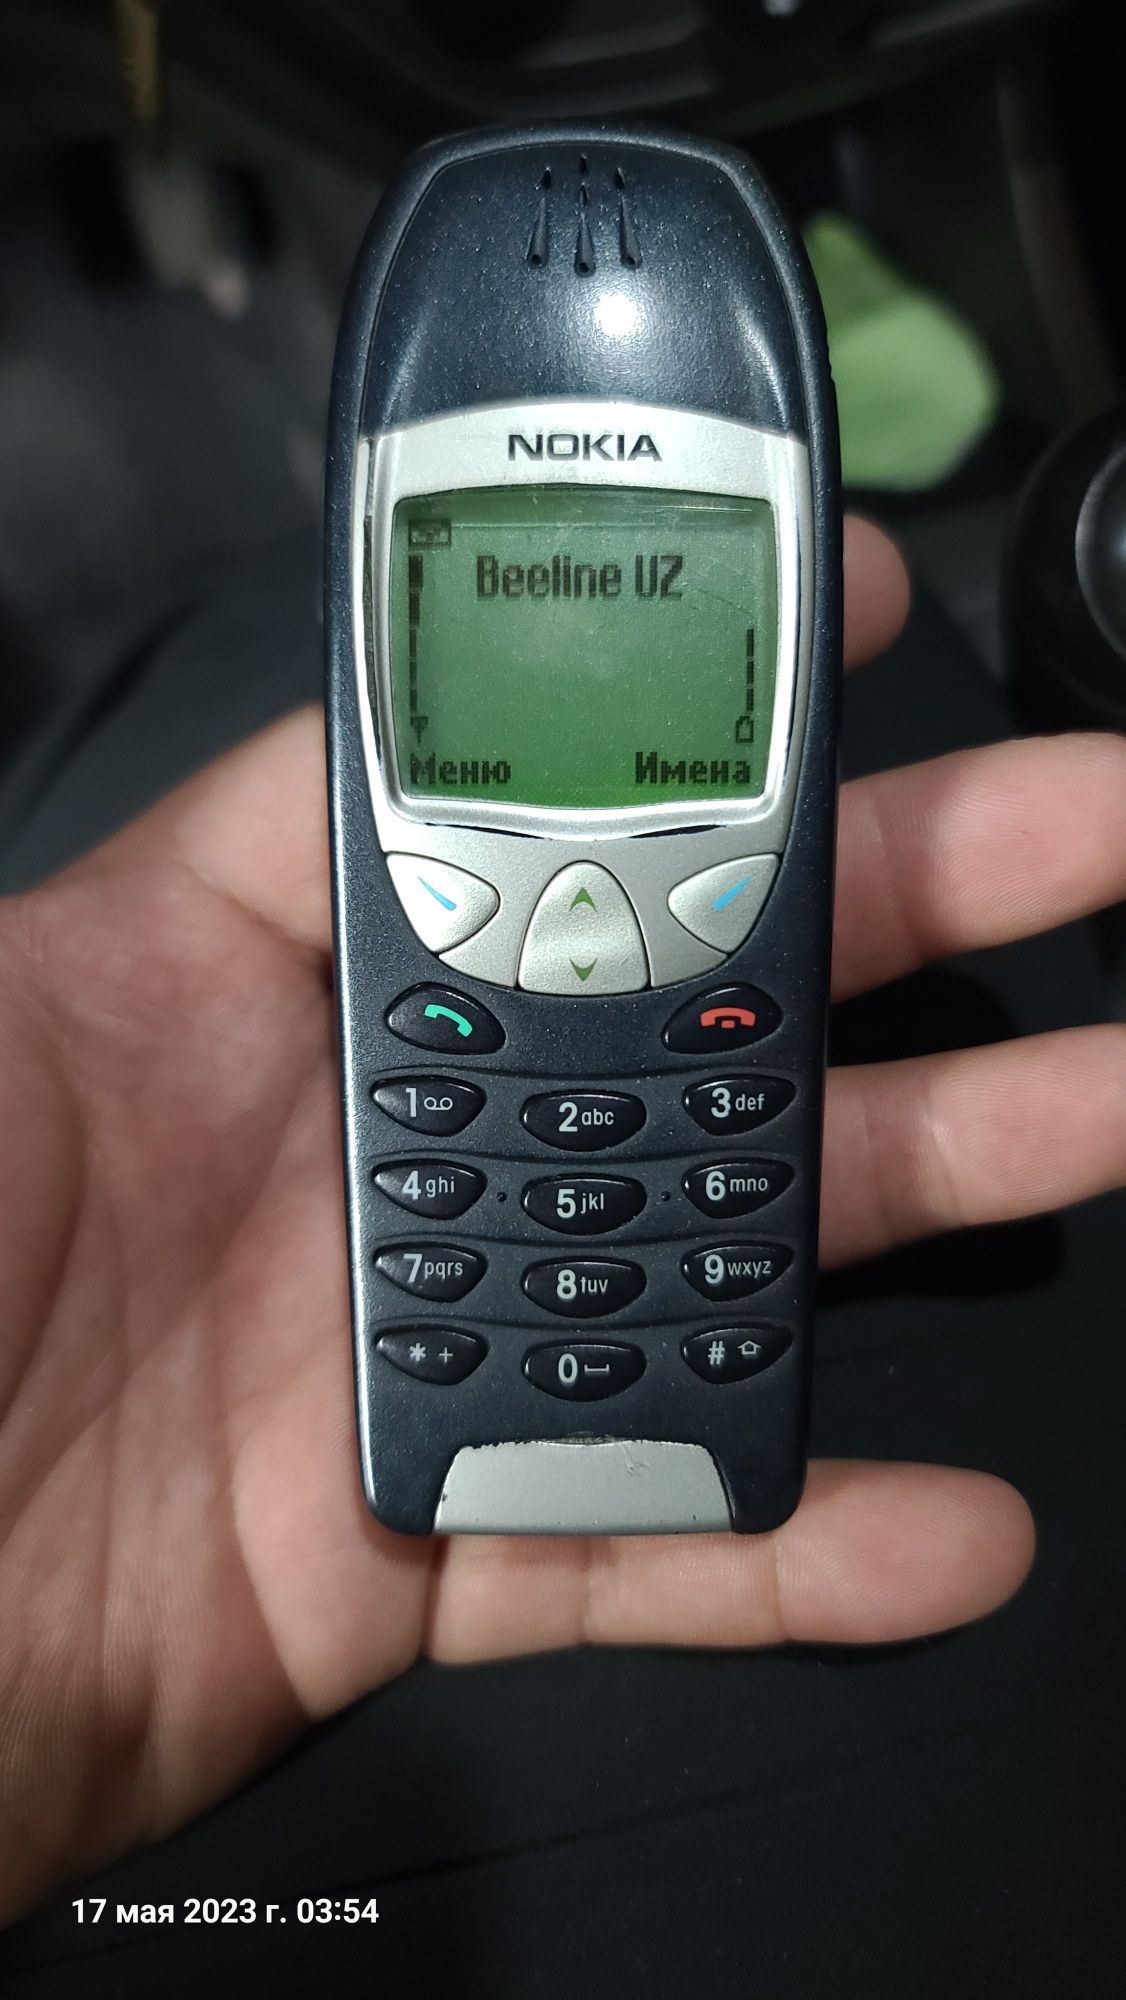 Nokia 6210i banan. Legenda